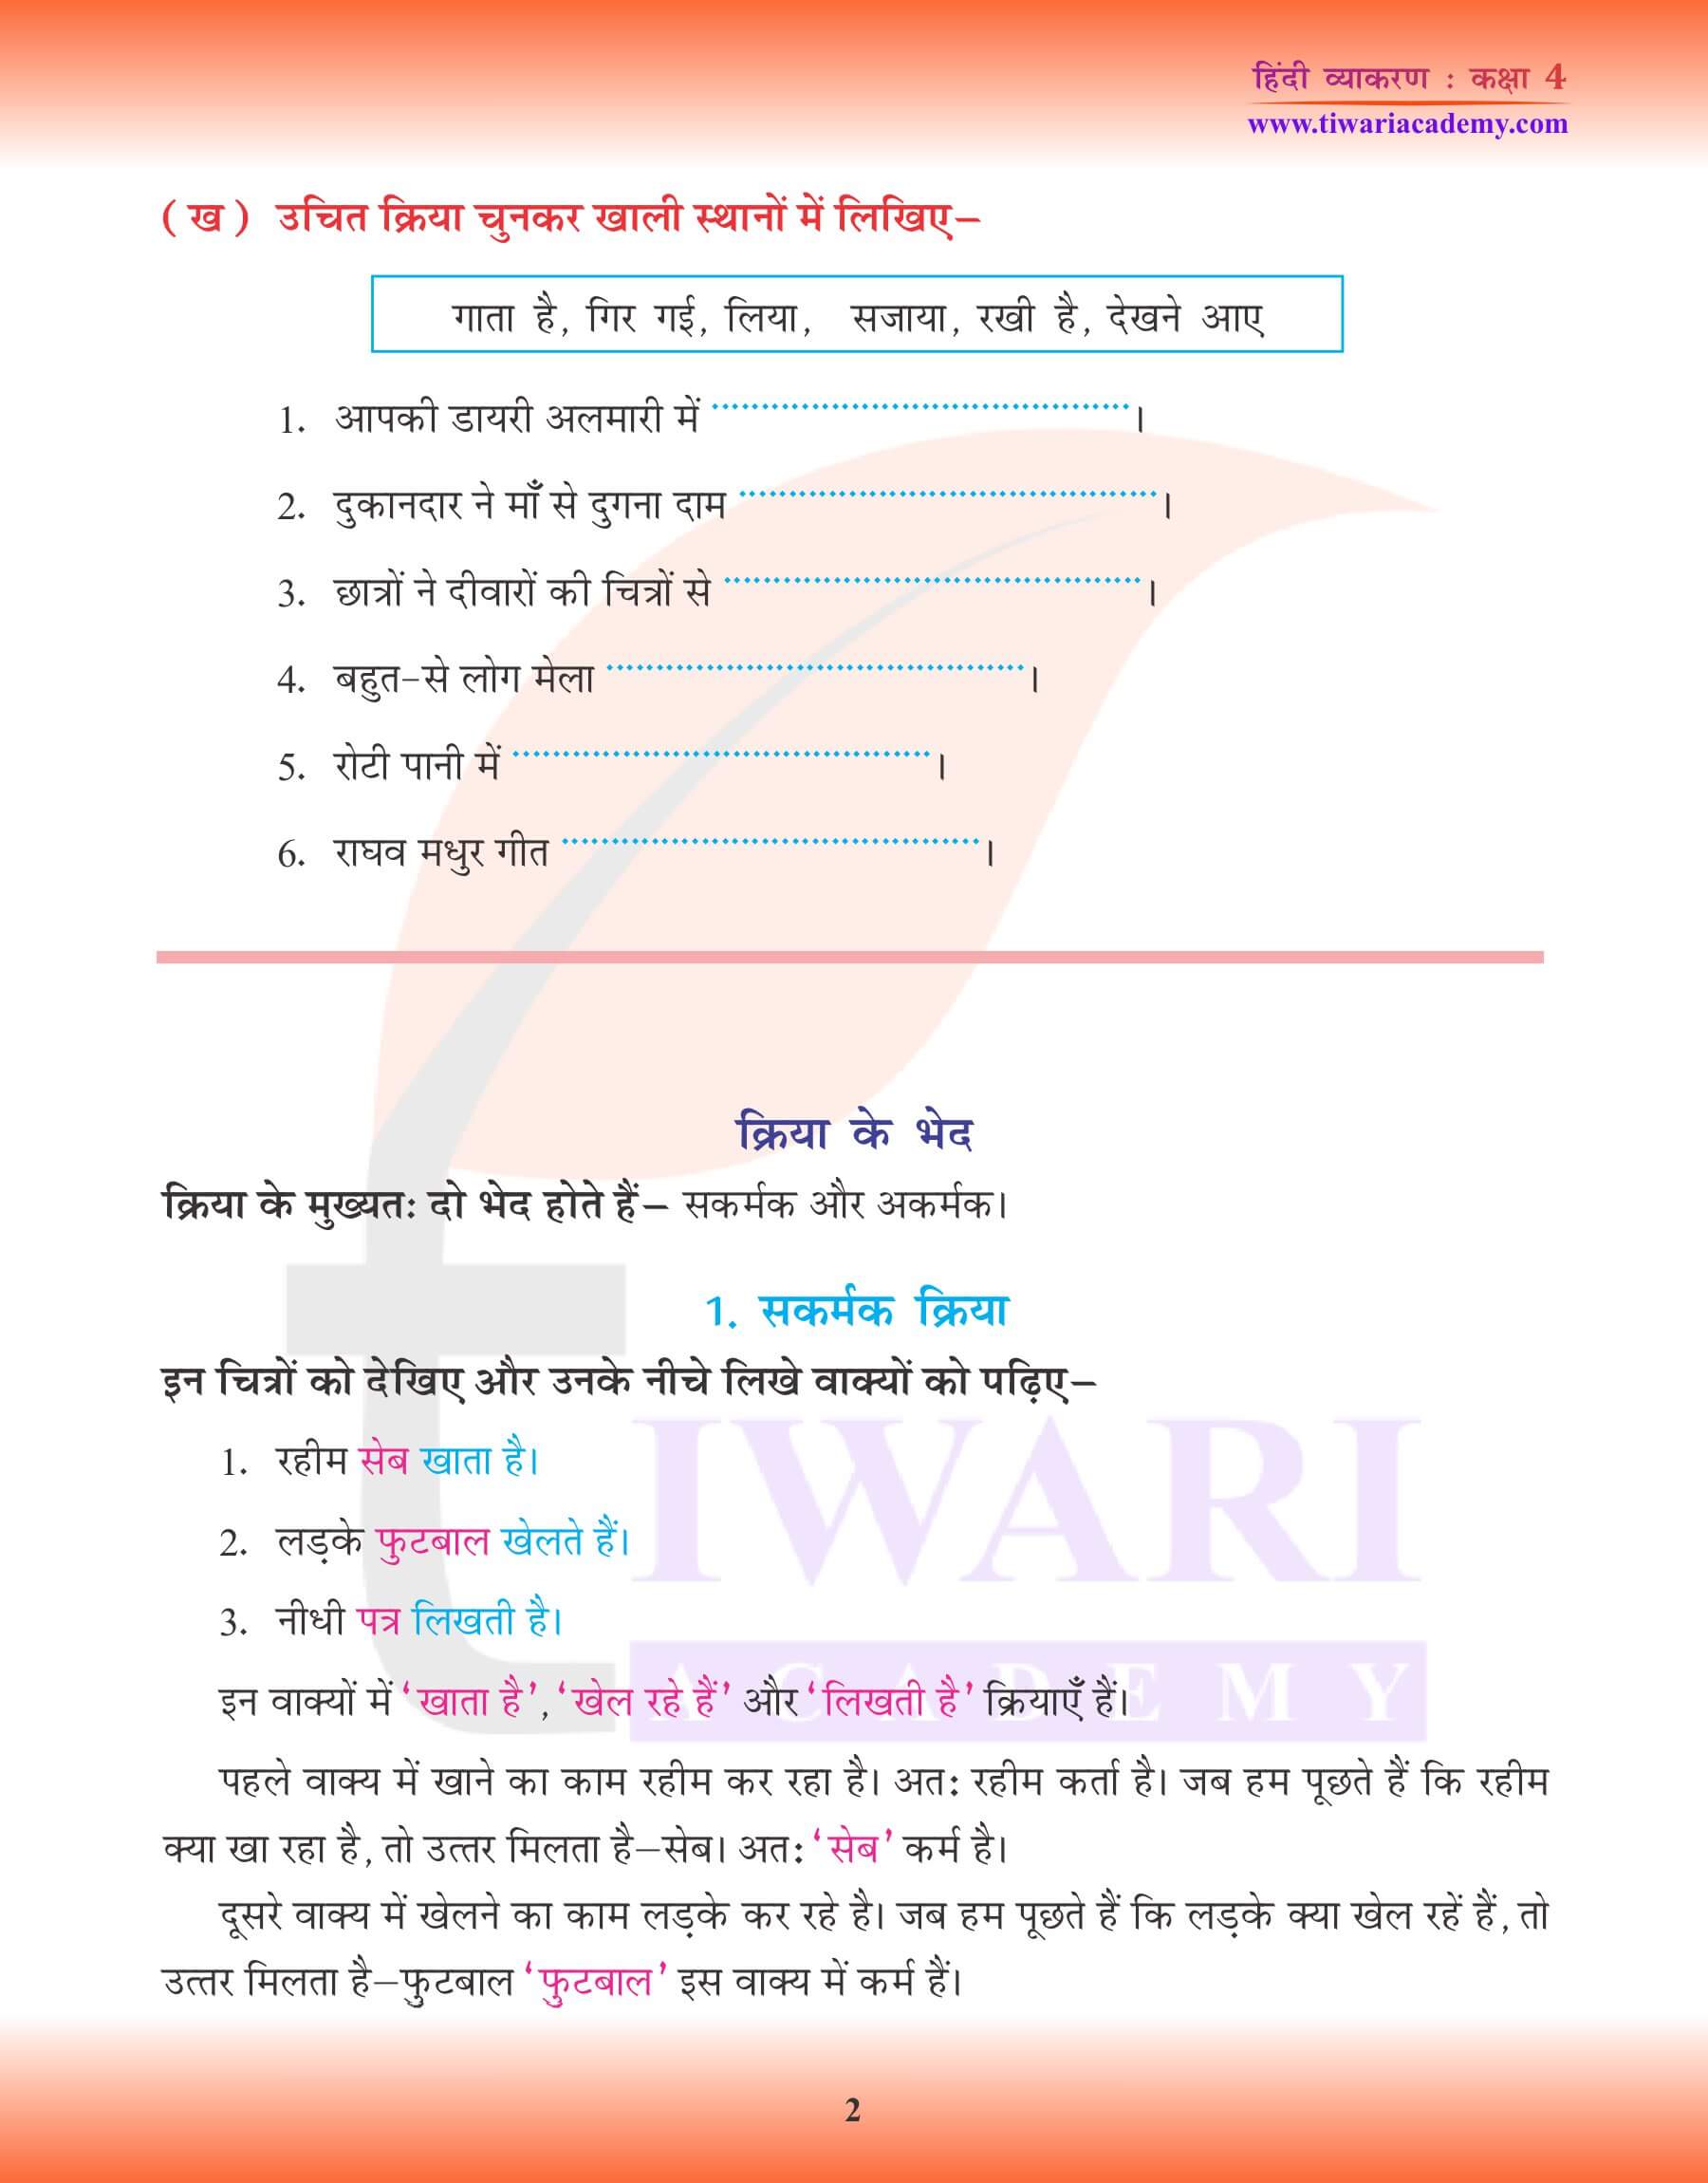 कक्षा 4 हिंदी व्याकरण में क्रिया तथा क्रिया के भेद